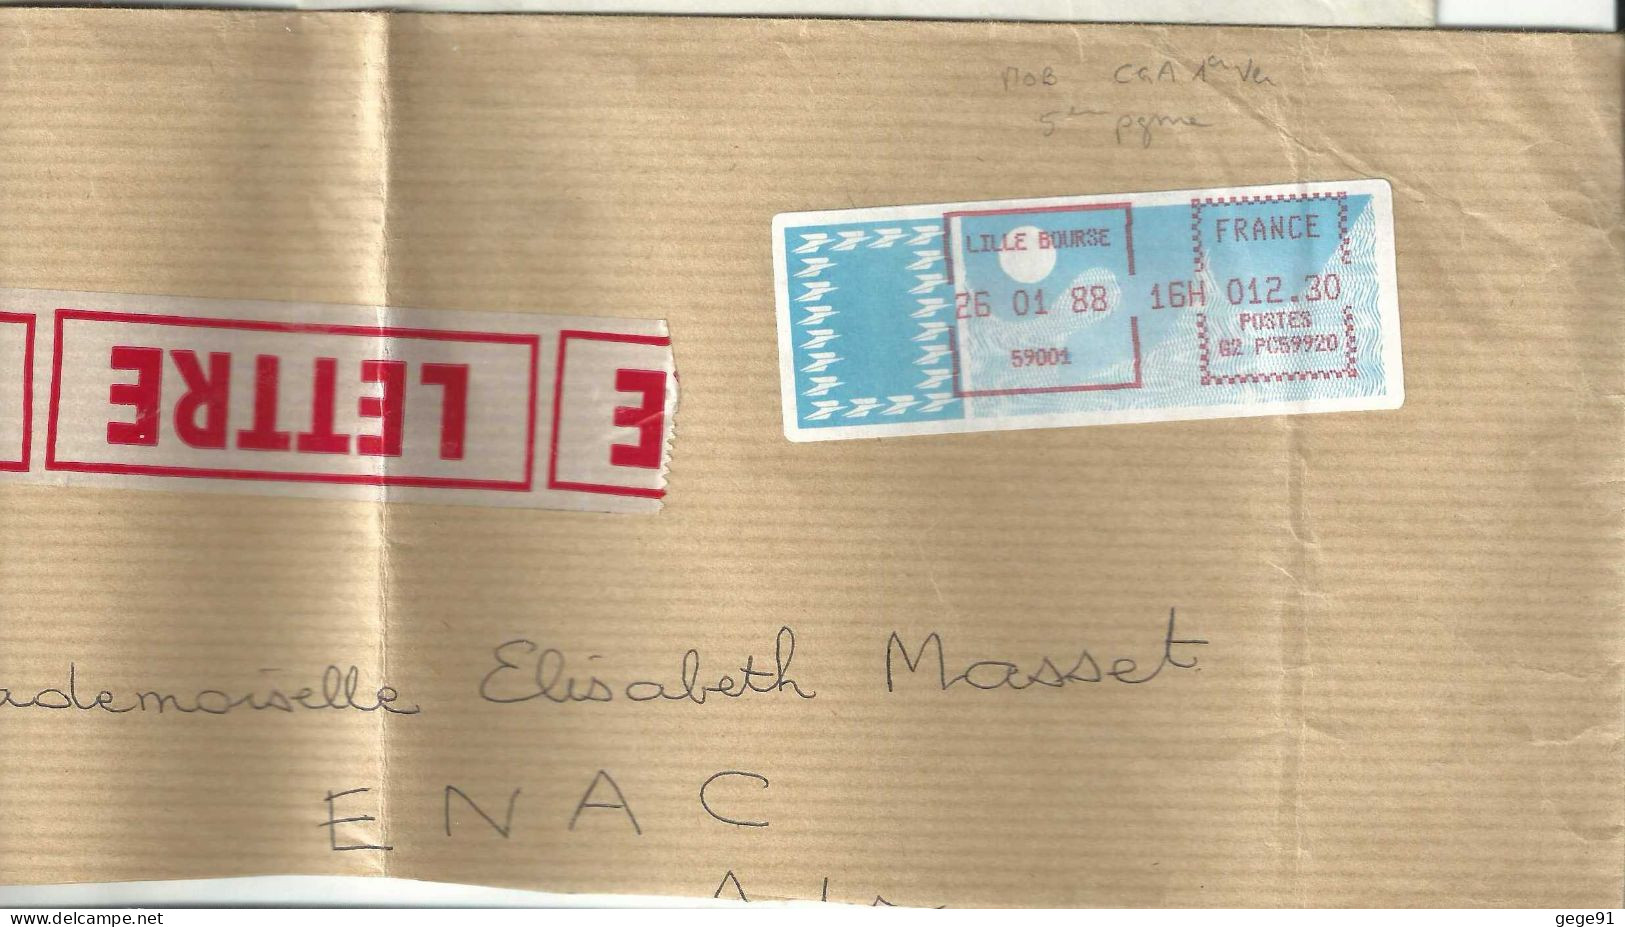 Vignette D'affranchissement - MOG - Lille Bourse - Nord - Enveloppe Réduite - 1985 Carta « Carrier »